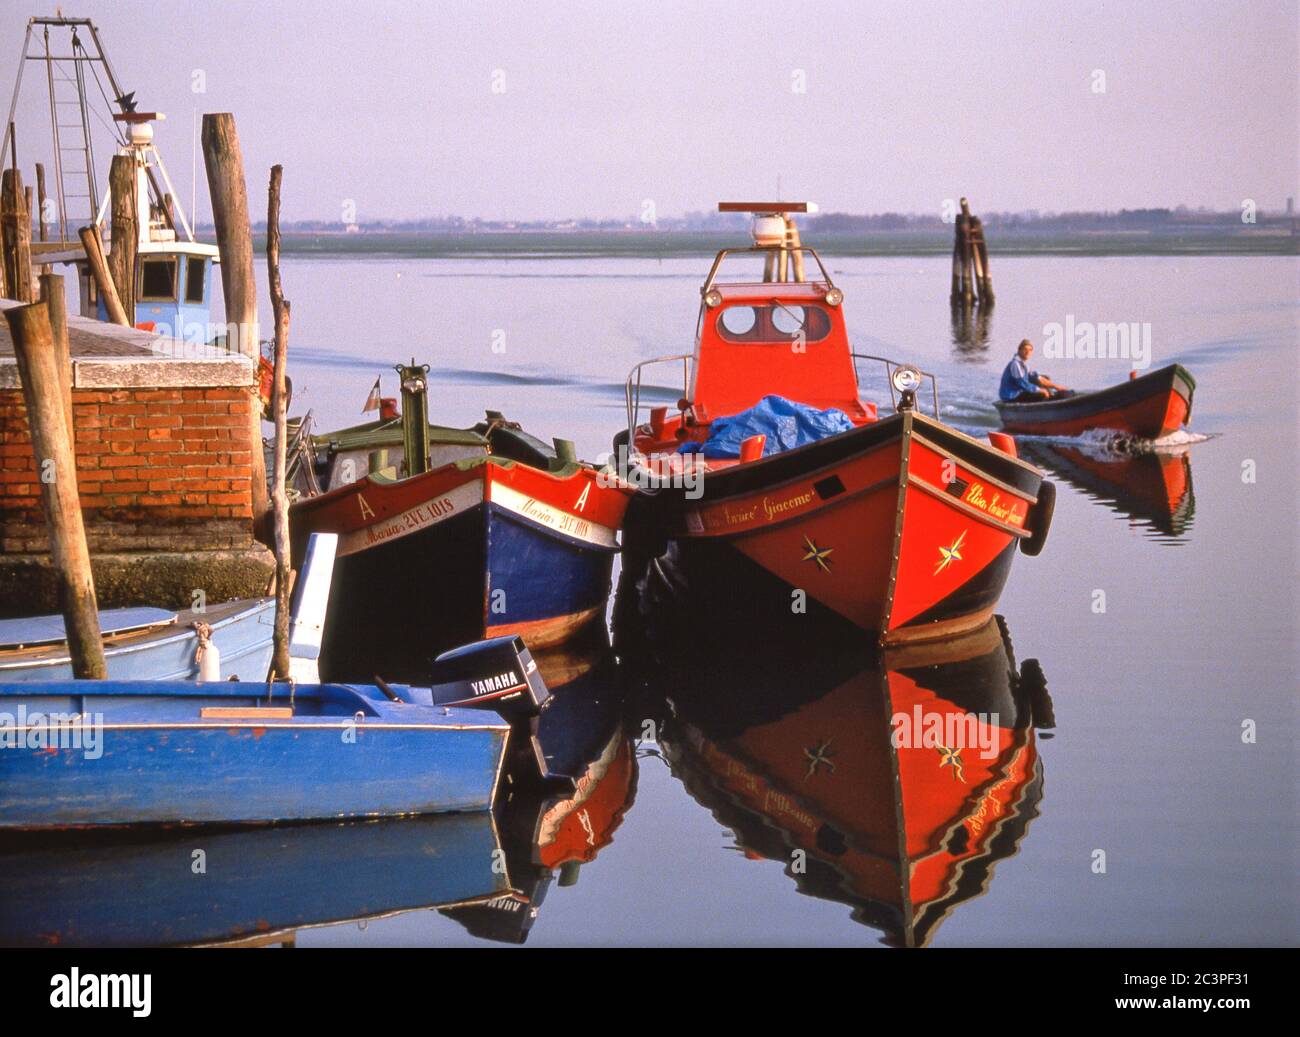 Boats on canal in early morning, Burano, Venetian Lagoon, Venice (Venezia), Veneto Region, Italy Stock Photo